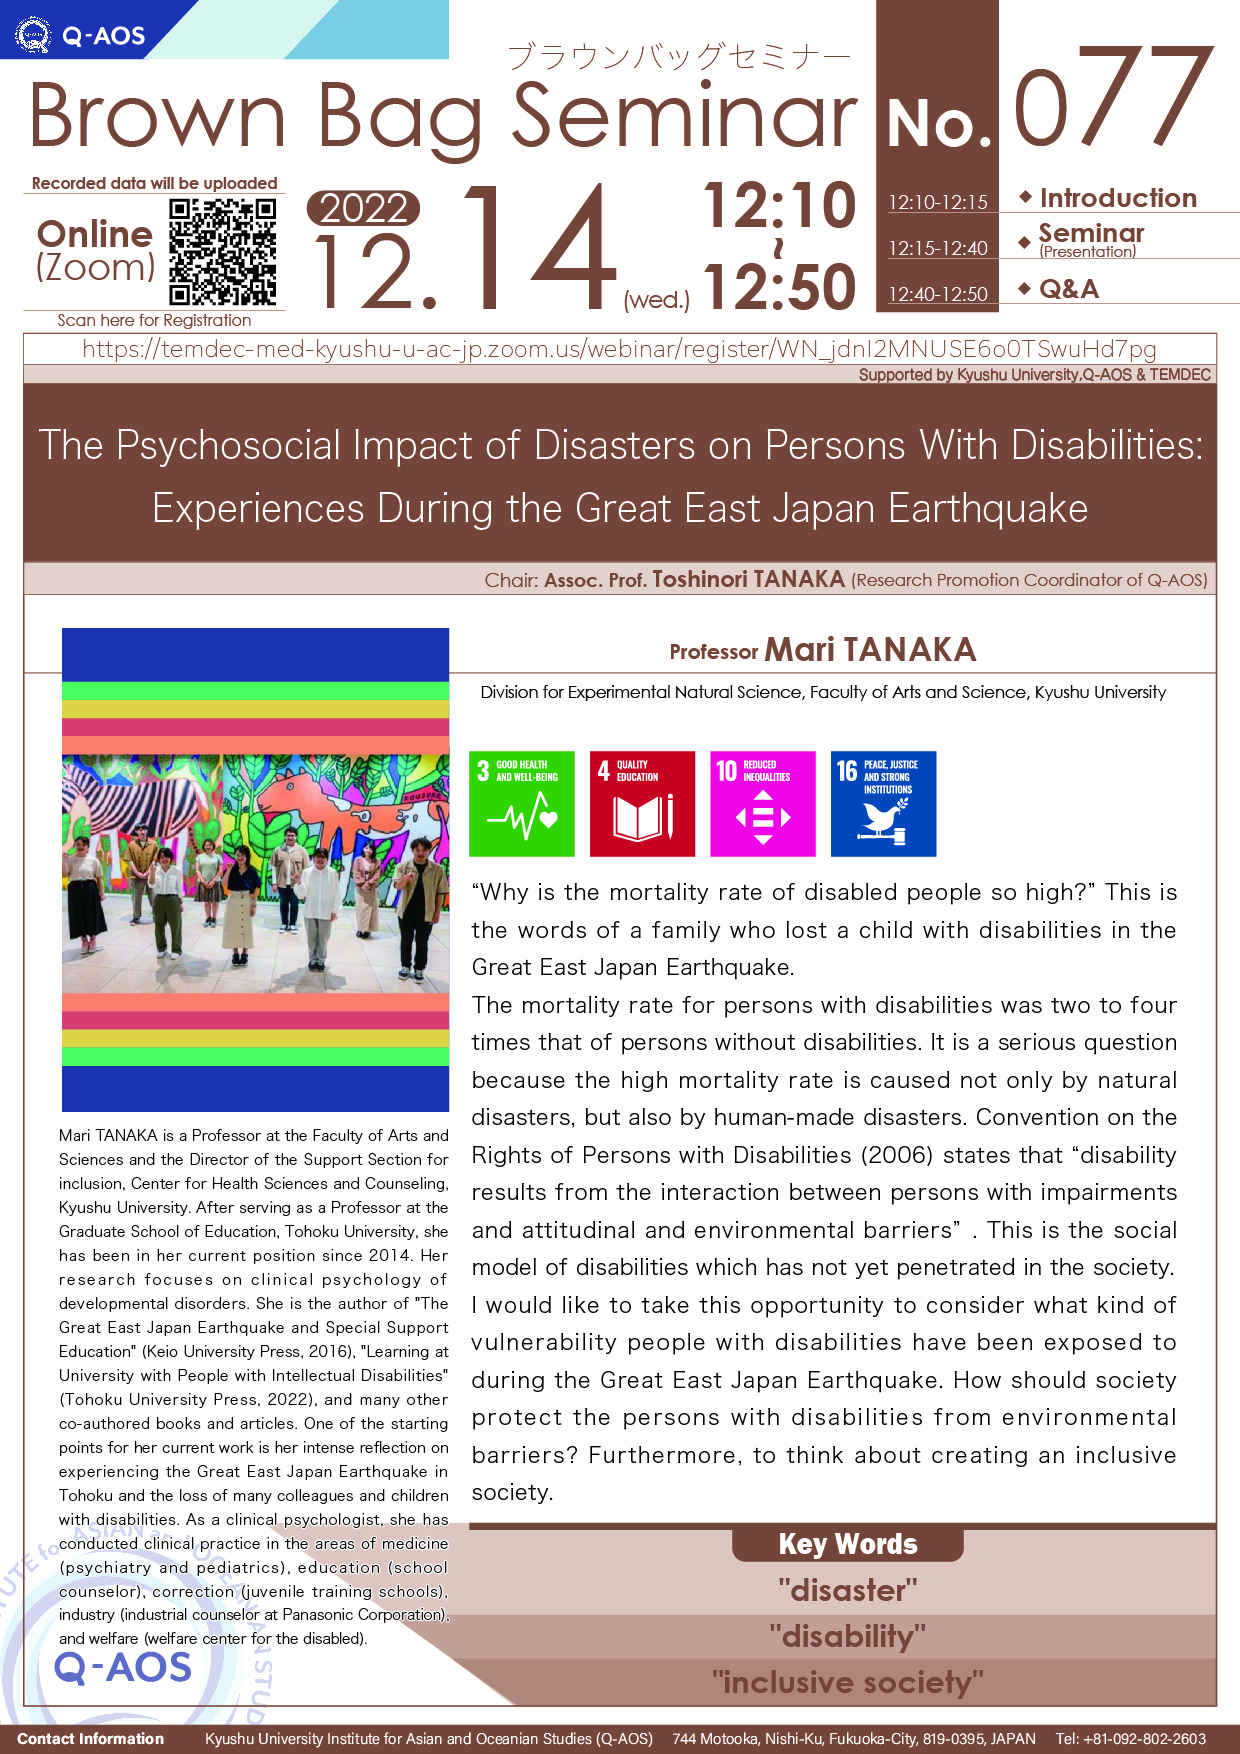 アイキャッチ画像：Q-AOS Brown Bag Seminar Series The 77th Seminar “The Psychosocial Impact of Disasters on Persons With Disabilities: Experiences During the Great East Japan Earthquake”